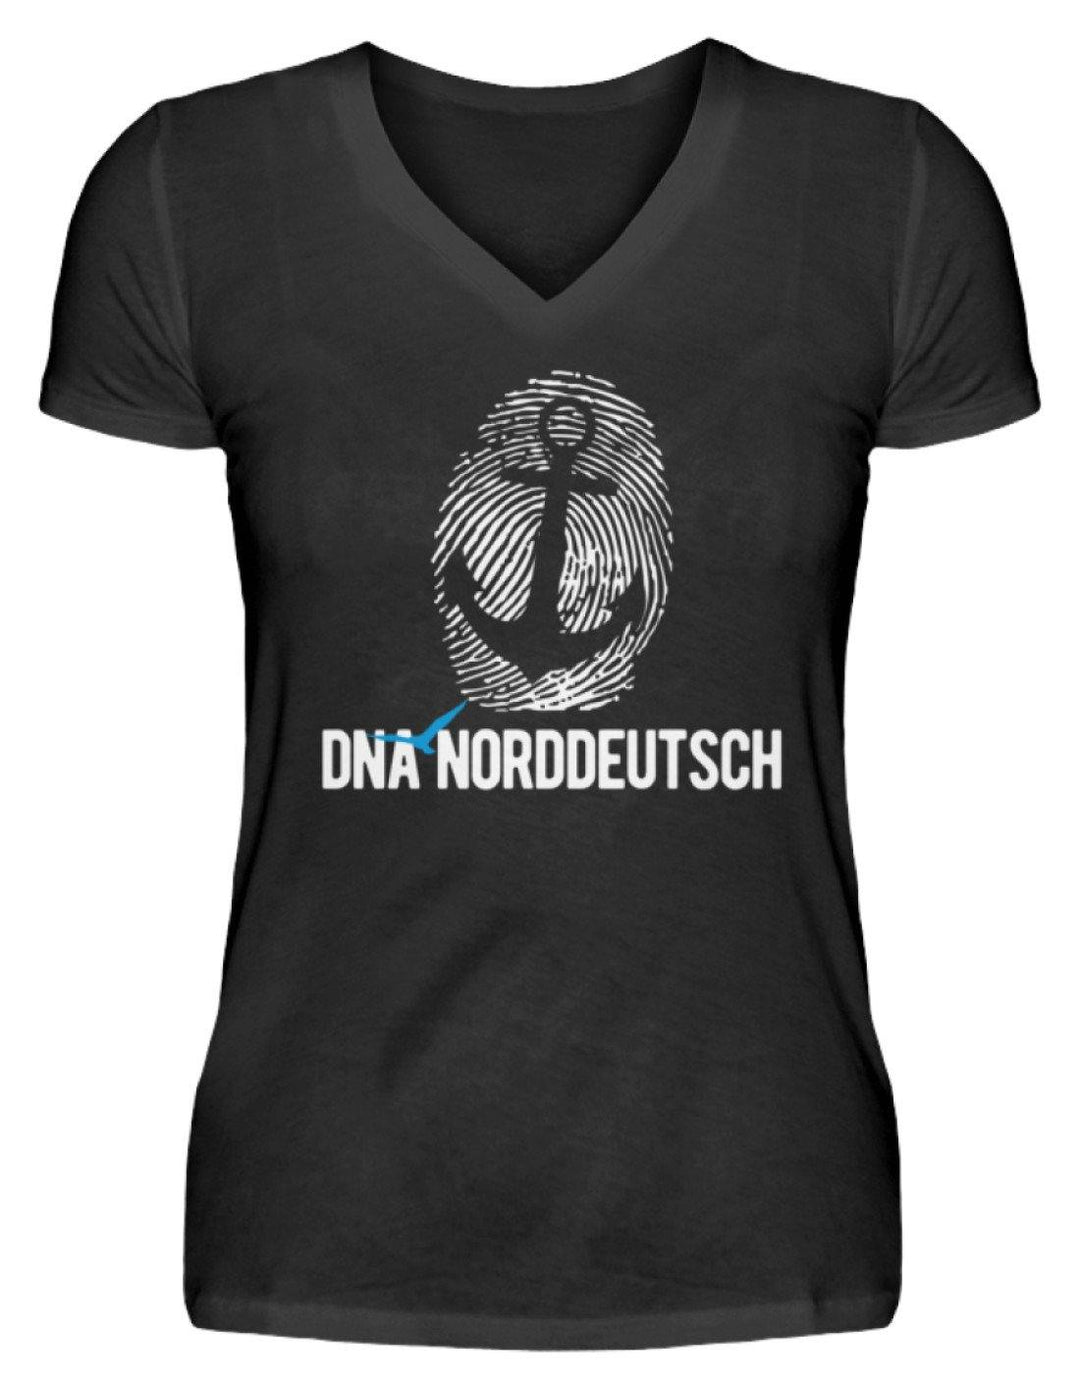 DNA Norddeutsch  - V-Neck Damenshirt - Words on Shirts Sag es mit dem Mittelfinger Shirts Hoodies Sweatshirt Taschen Gymsack Spruch Sprüche Statement